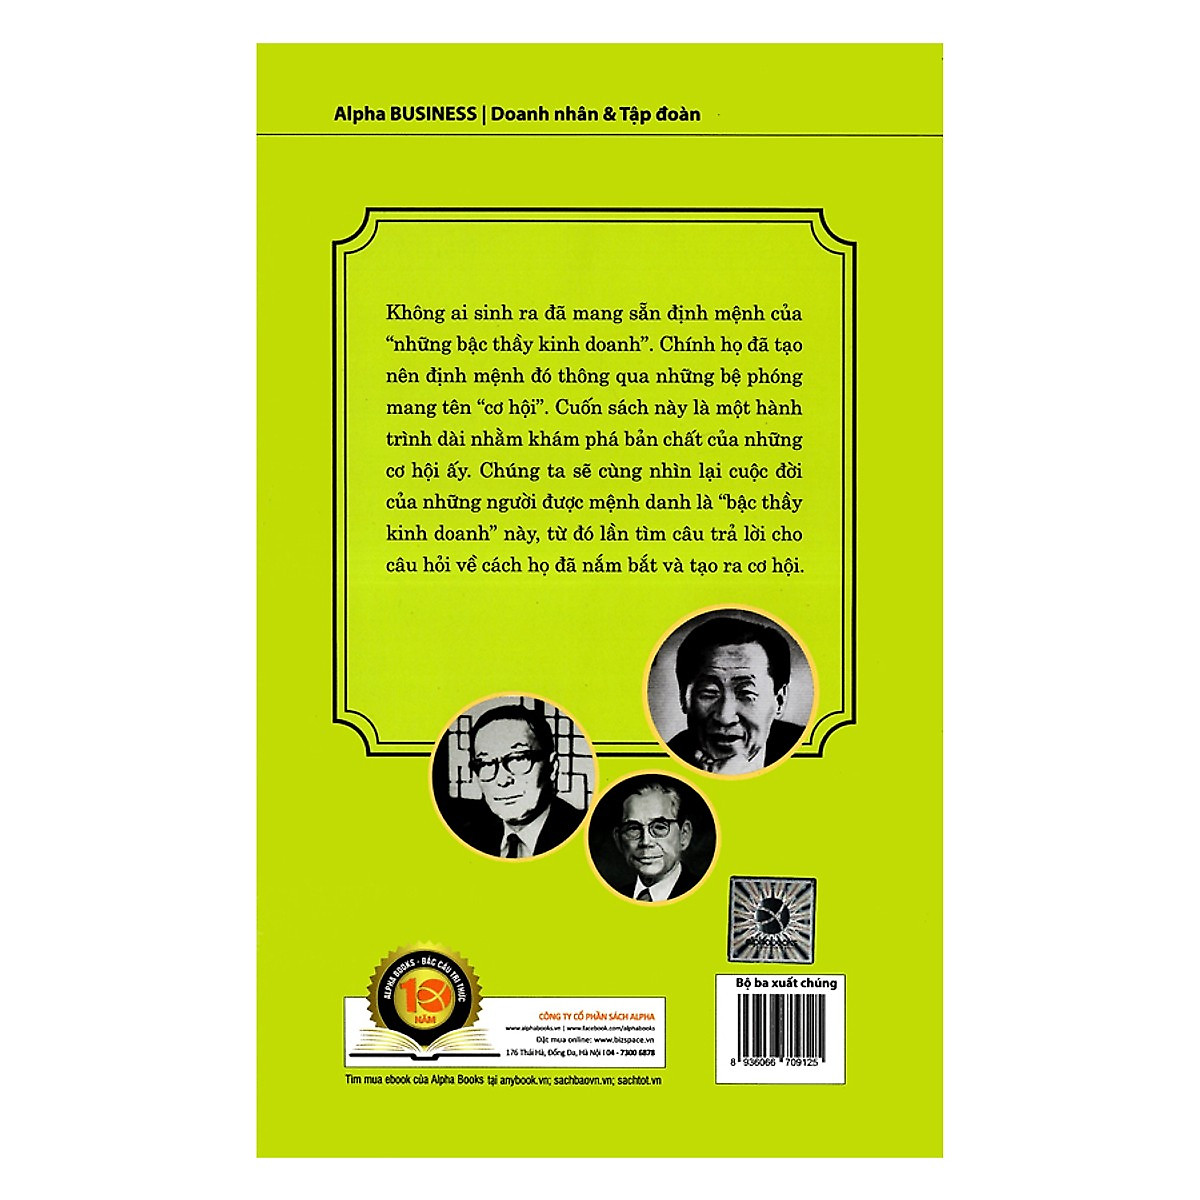 Tủ Sách Doanh Nhân Kiệt Xuất: Bộ Ba Xuất Chúng Hàn Quốc (Chung Ju-yung, Lee Byung-chul, Koo In-hwoi là ba nhà sáng lập của ba tập đoàn hàng đầu ở Hàn Quốc); Tặng Kèm BookMark